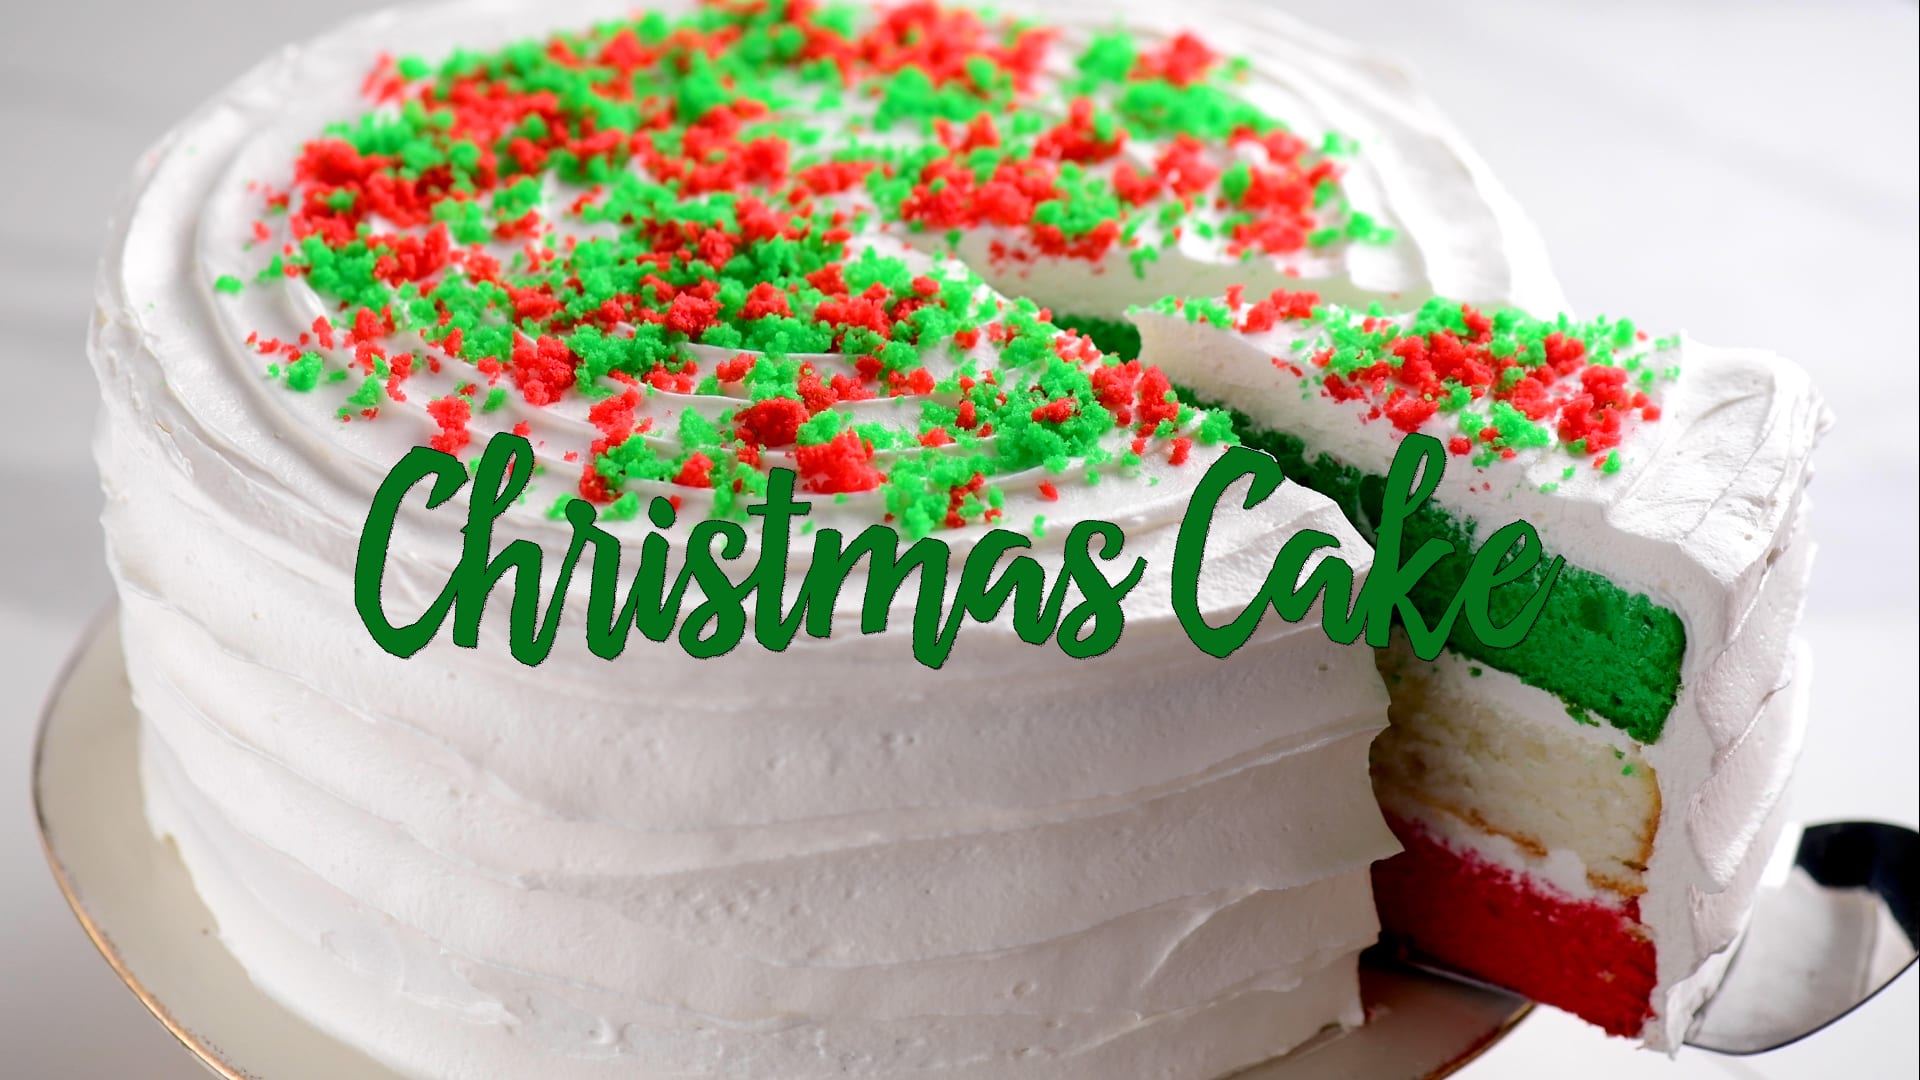 Amazing Christmas Cake Decorating Compilation - YouTube